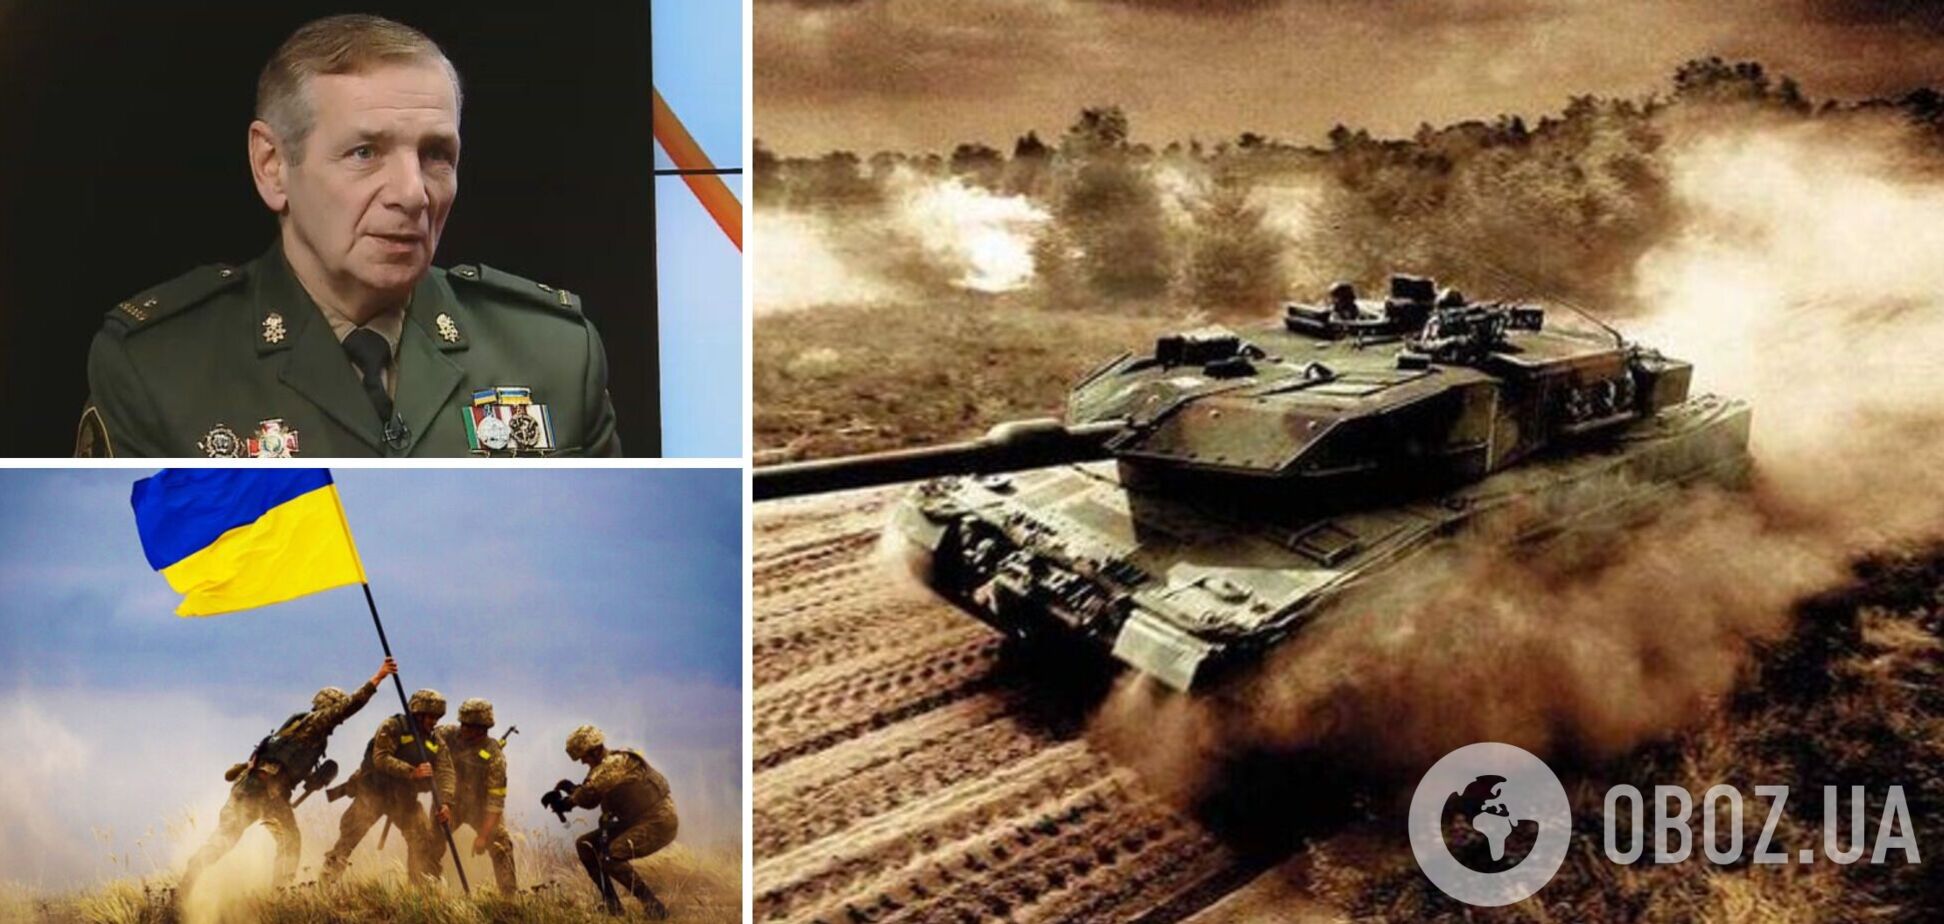 Майор Гетьман: західні танки поїдуть херсонськими степами, контрнаступ ЗСУ ніщо не зупинить. Інтерв’ю